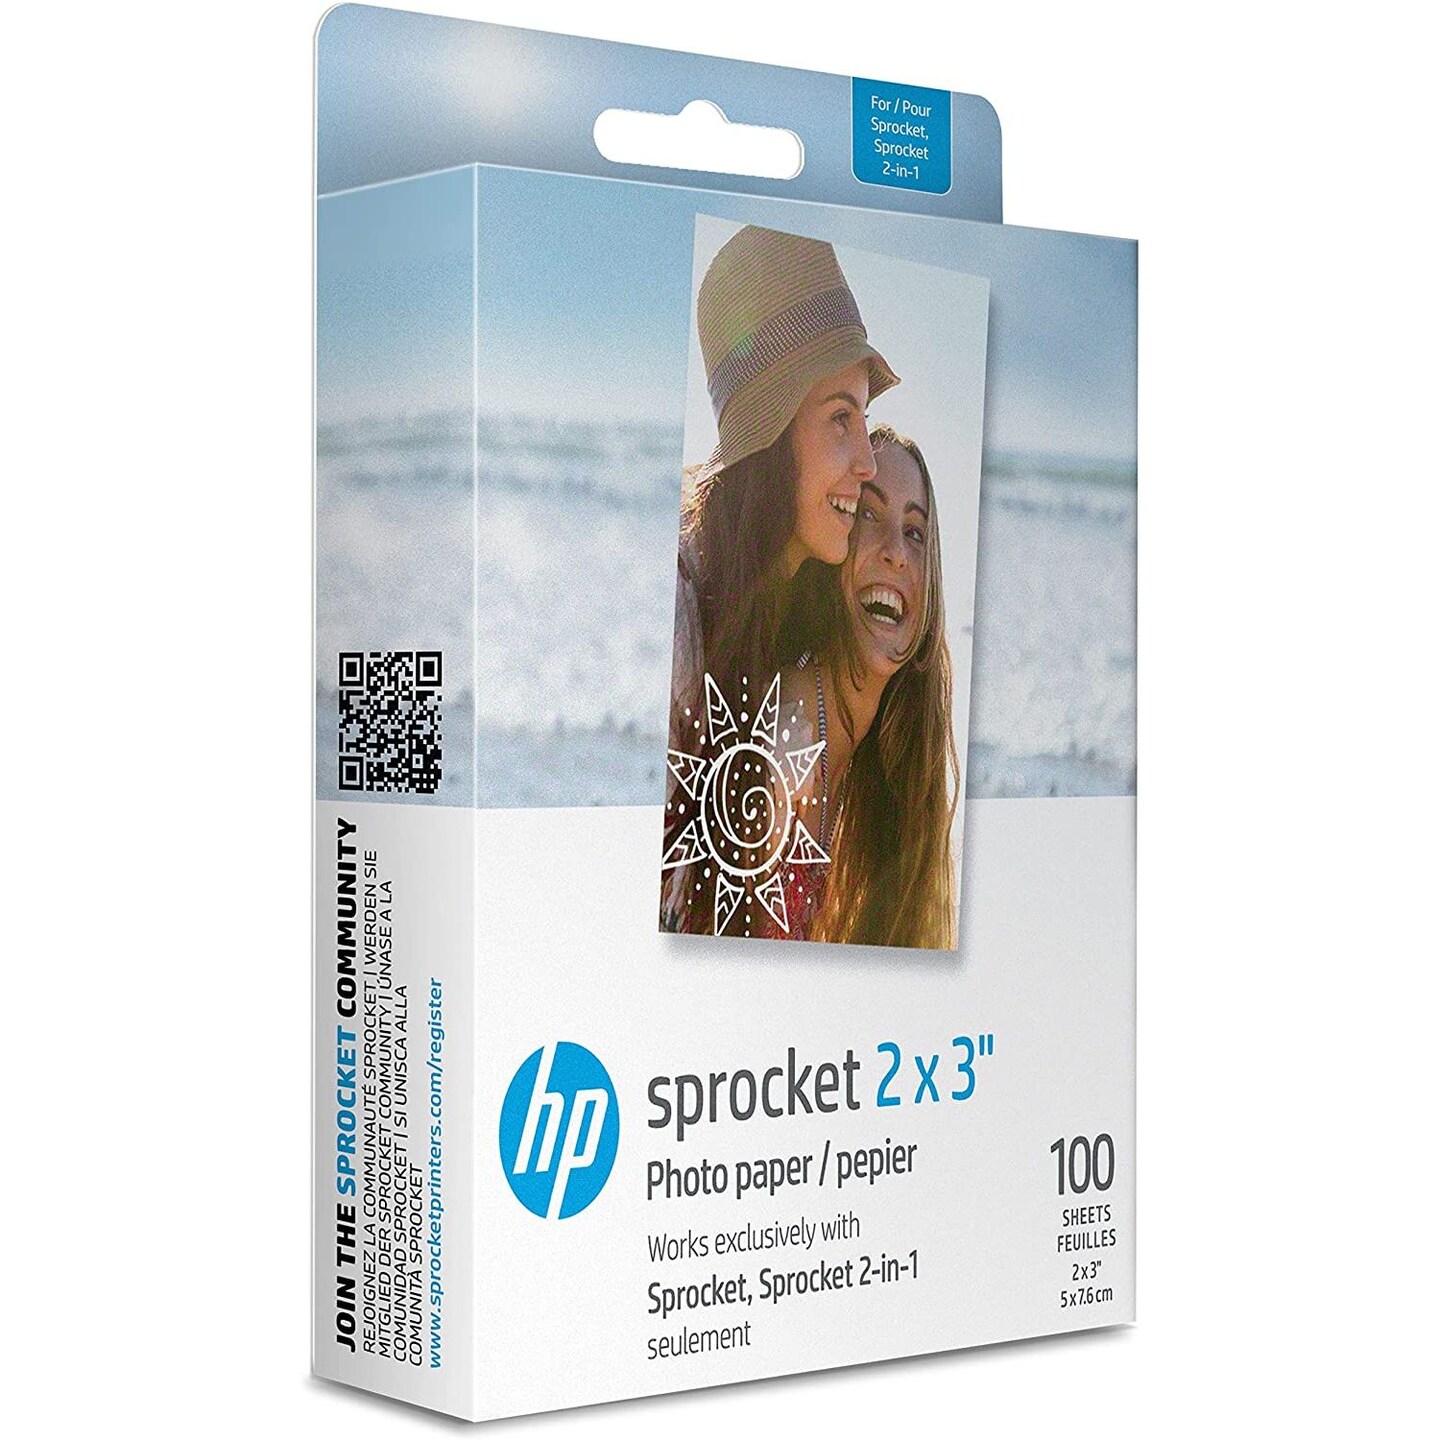 HP Sprocket Sticky Back Zink Photo Paper 2x3, Photo Paper